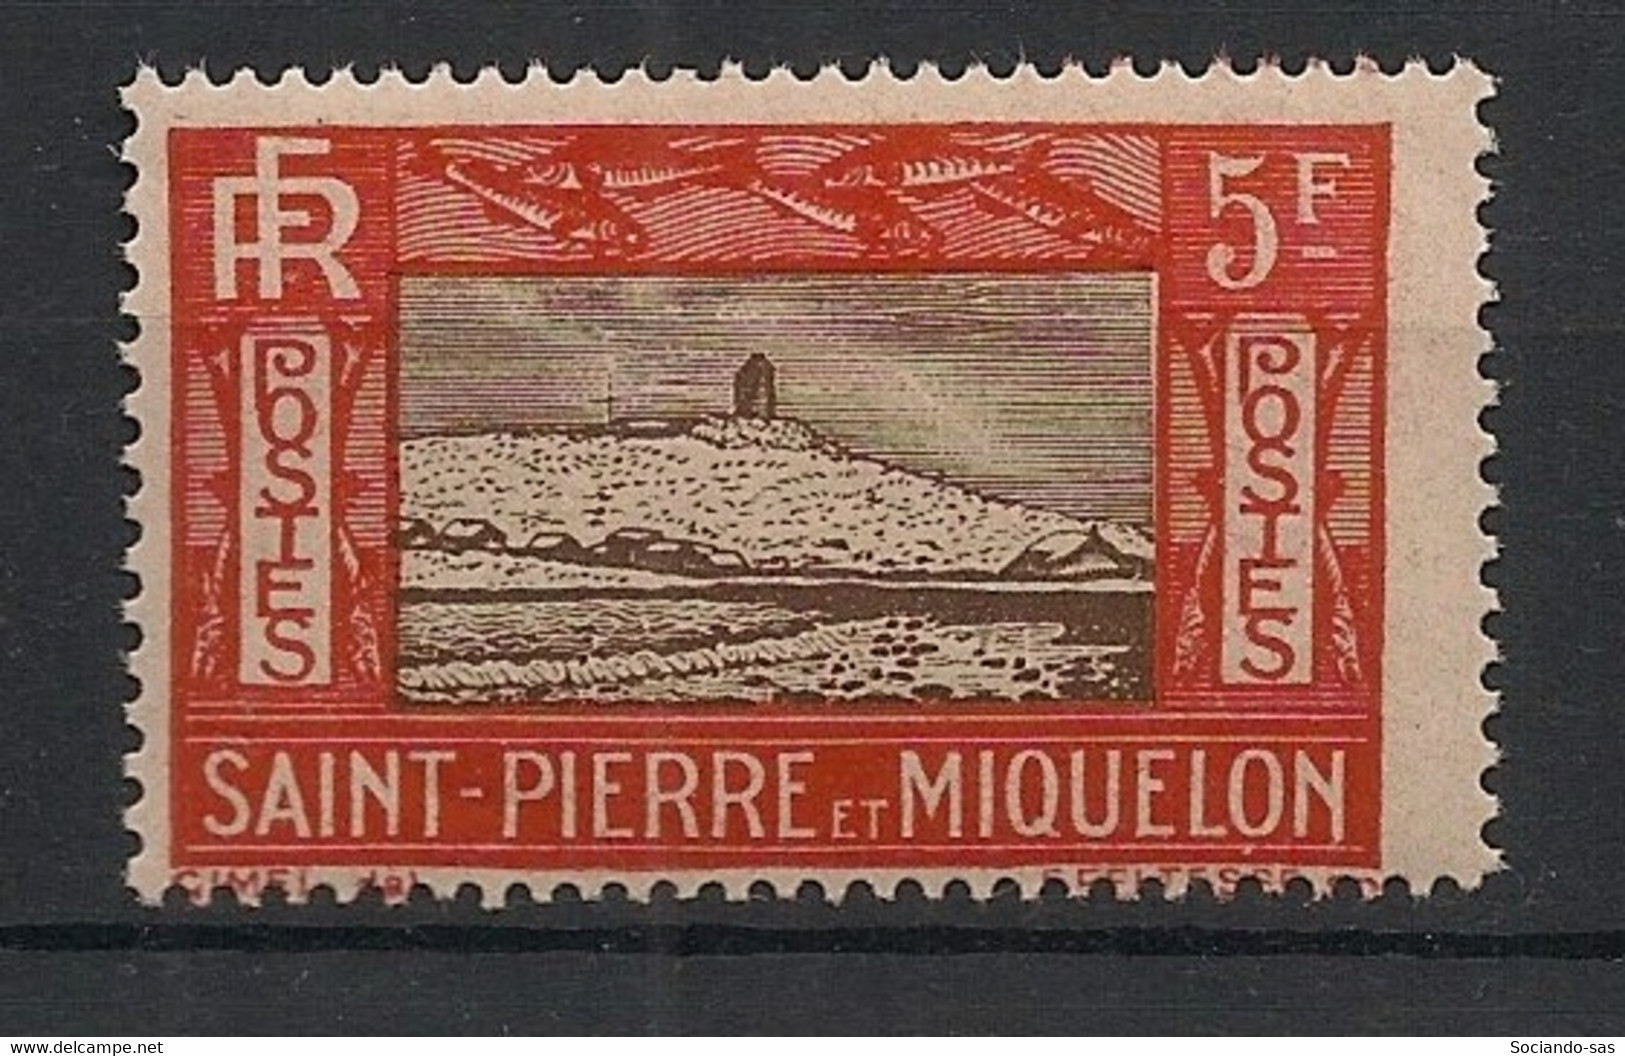 SPM - 1932-33 - N°YT. 157 - Phare 5f Rouge Et Brun - Neuf Luxe ** / MNH / Postfrisch - Neufs